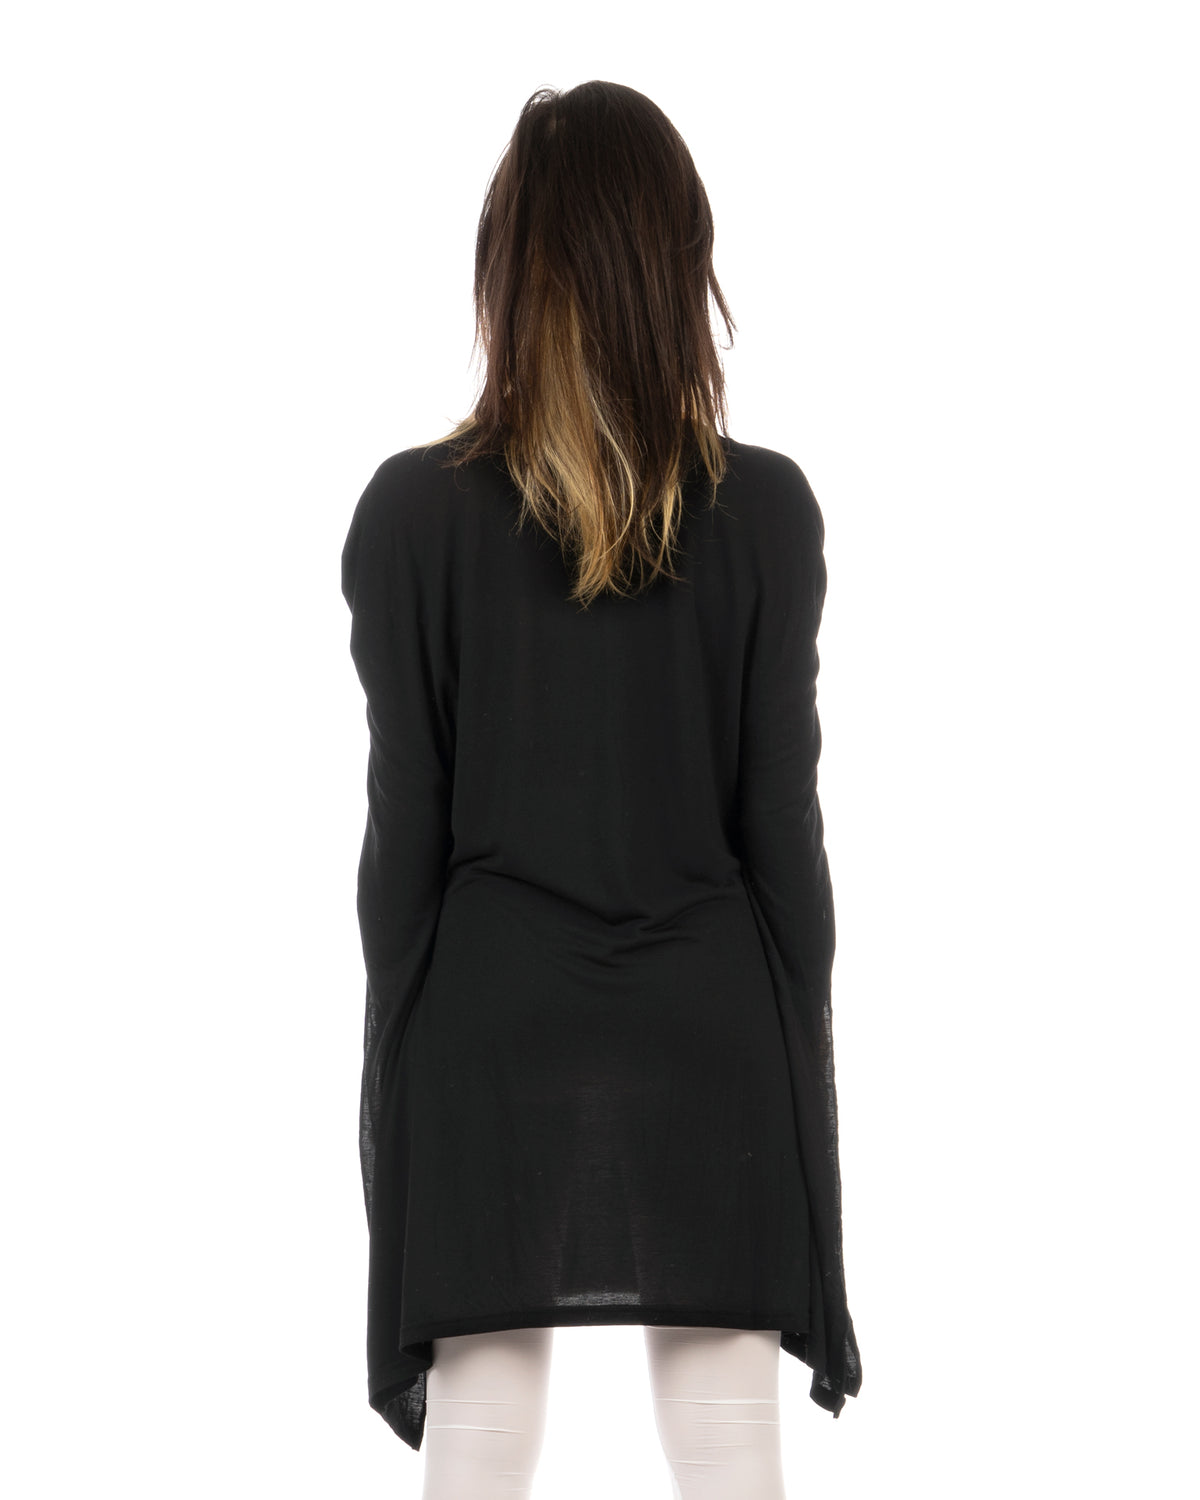 Ground Zero | 'Follow Me' Printed Tee Dress Black - Concrete